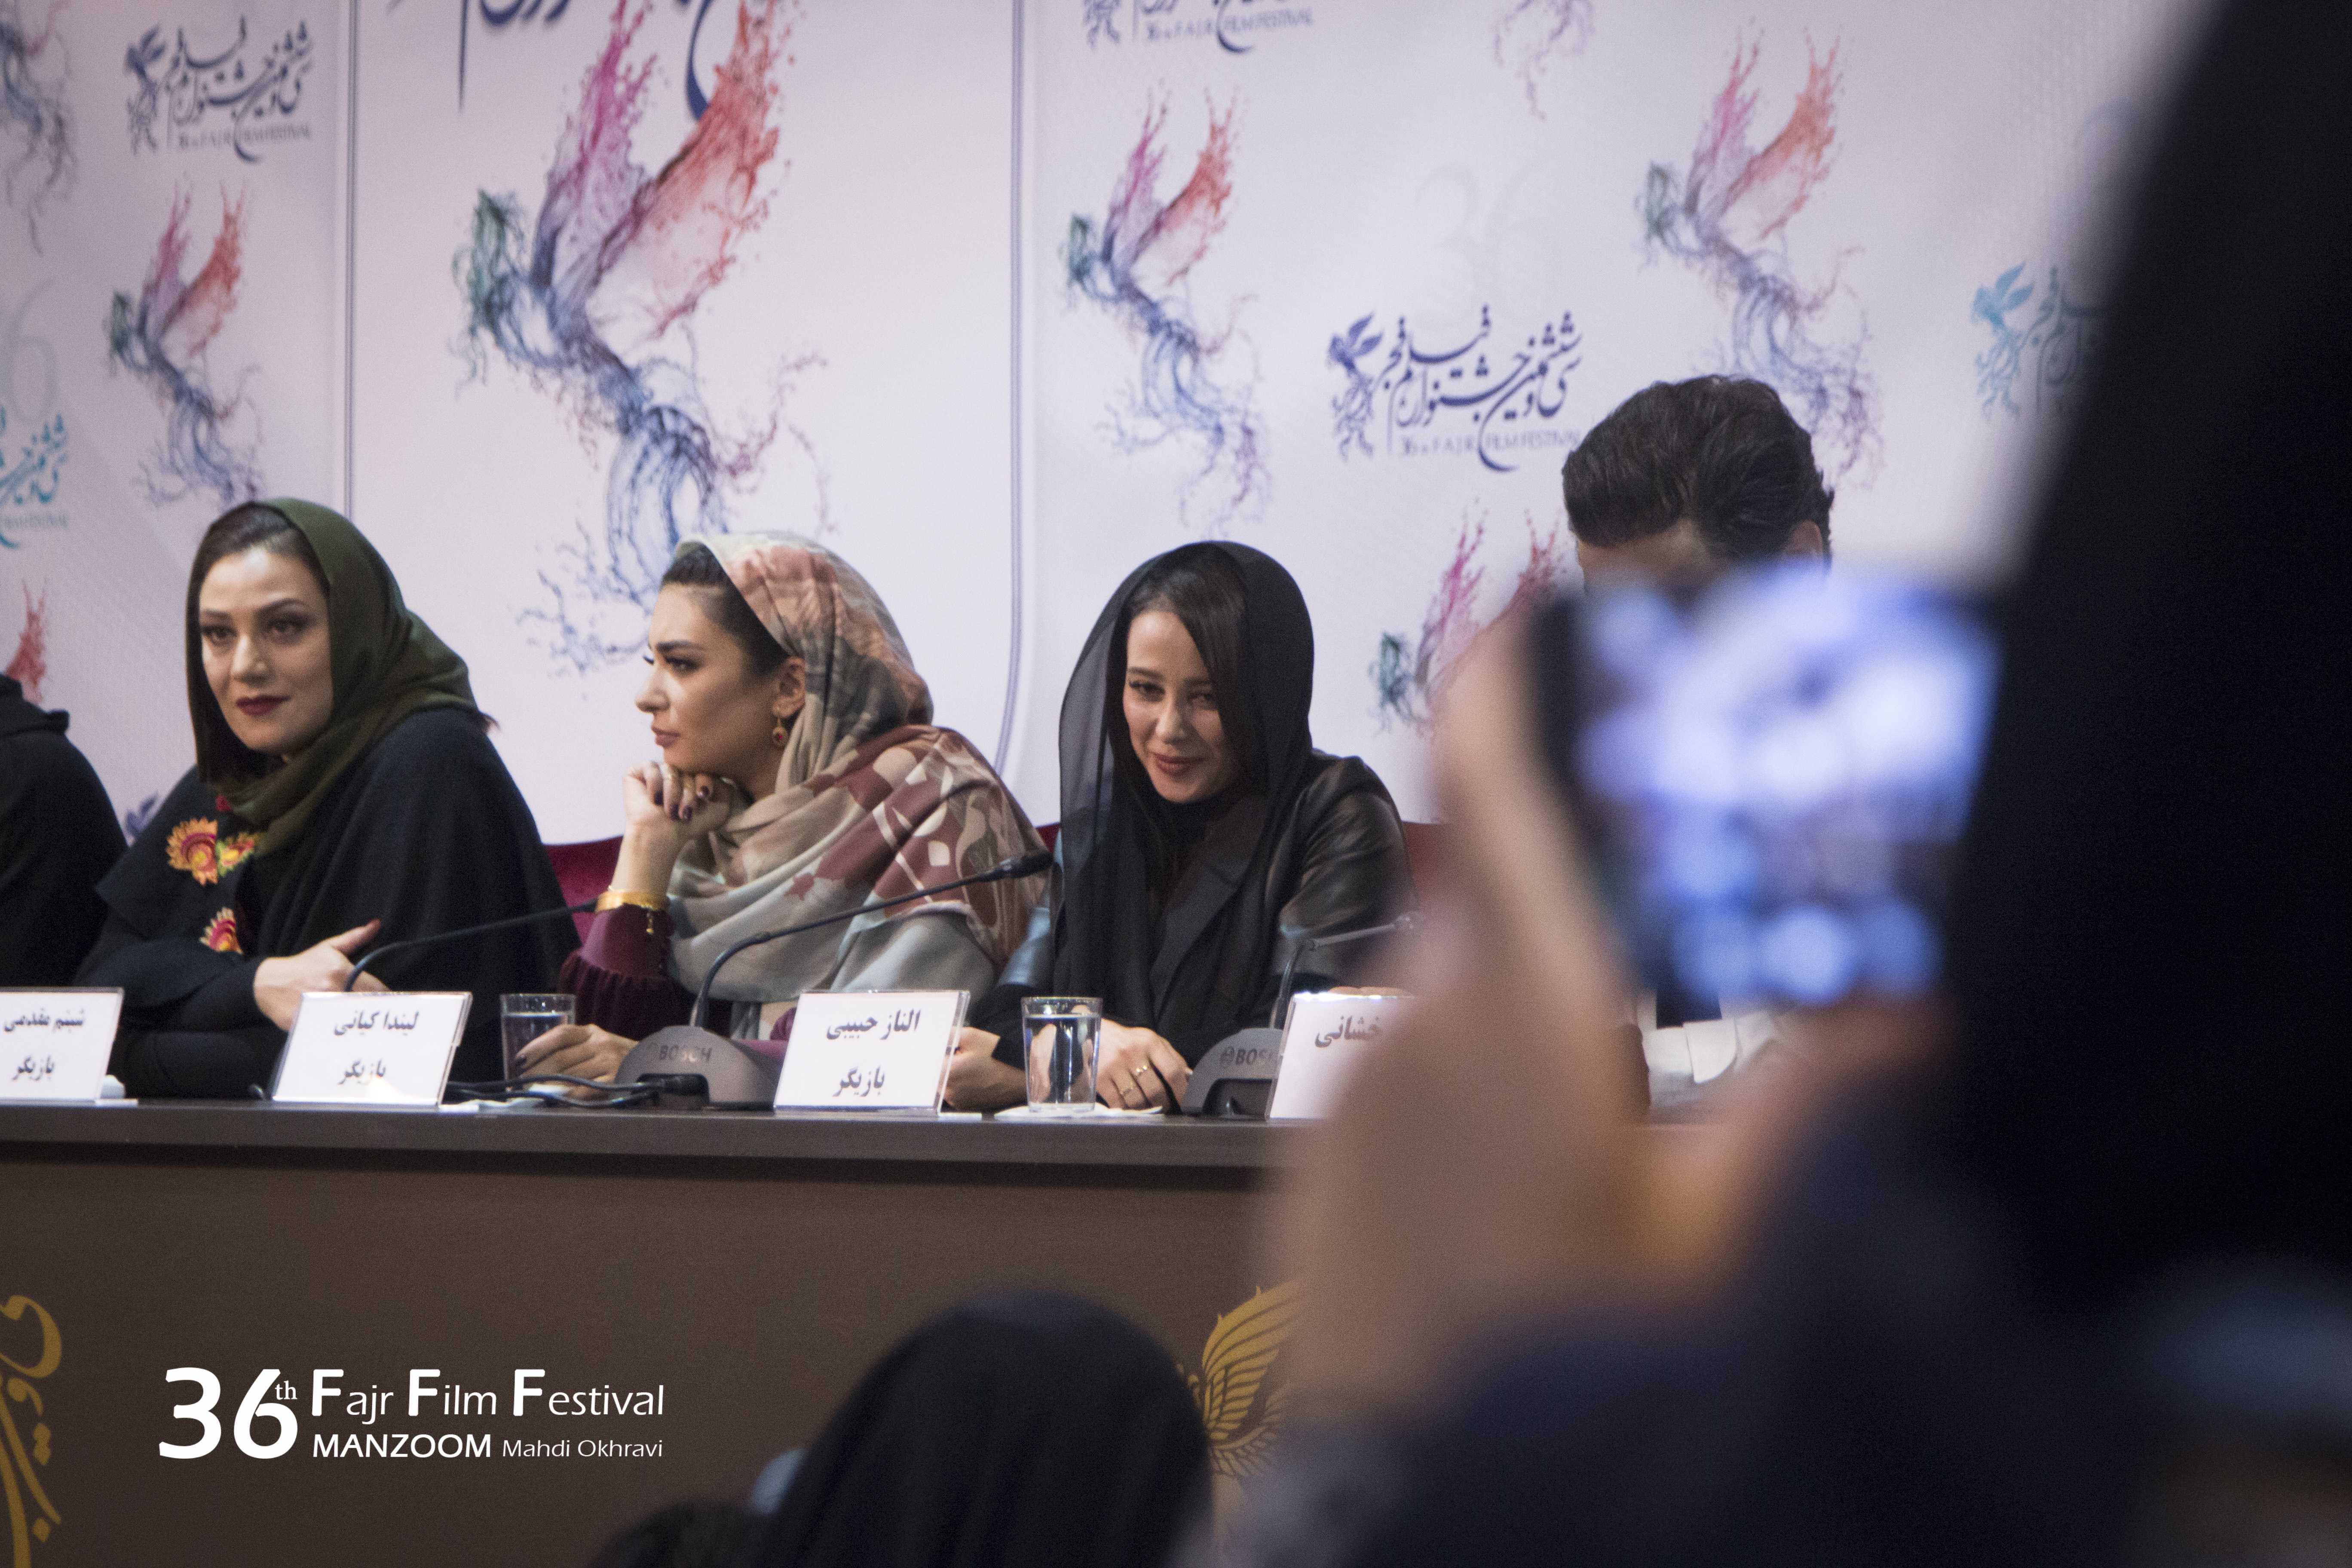 لیندا کیانی در نشست خبری فیلم سینمایی خجالت نکش به همراه شبنم مقدمی و الناز حبیبی